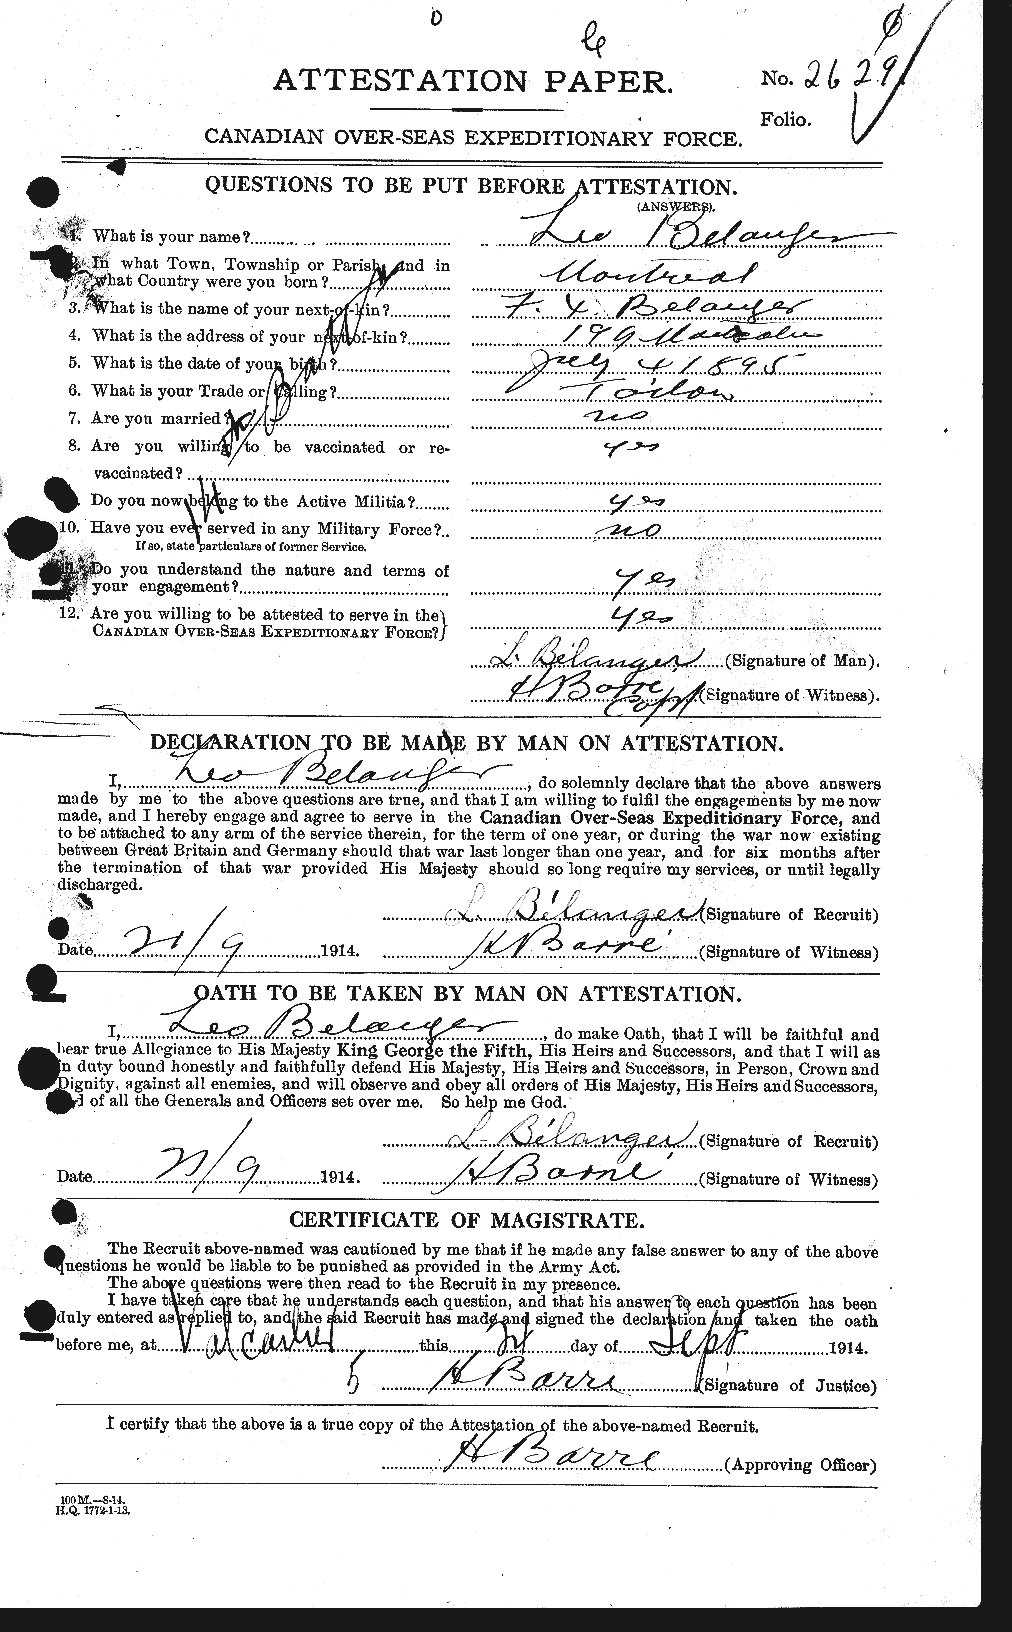 Dossiers du Personnel de la Première Guerre mondiale - CEC 232701a